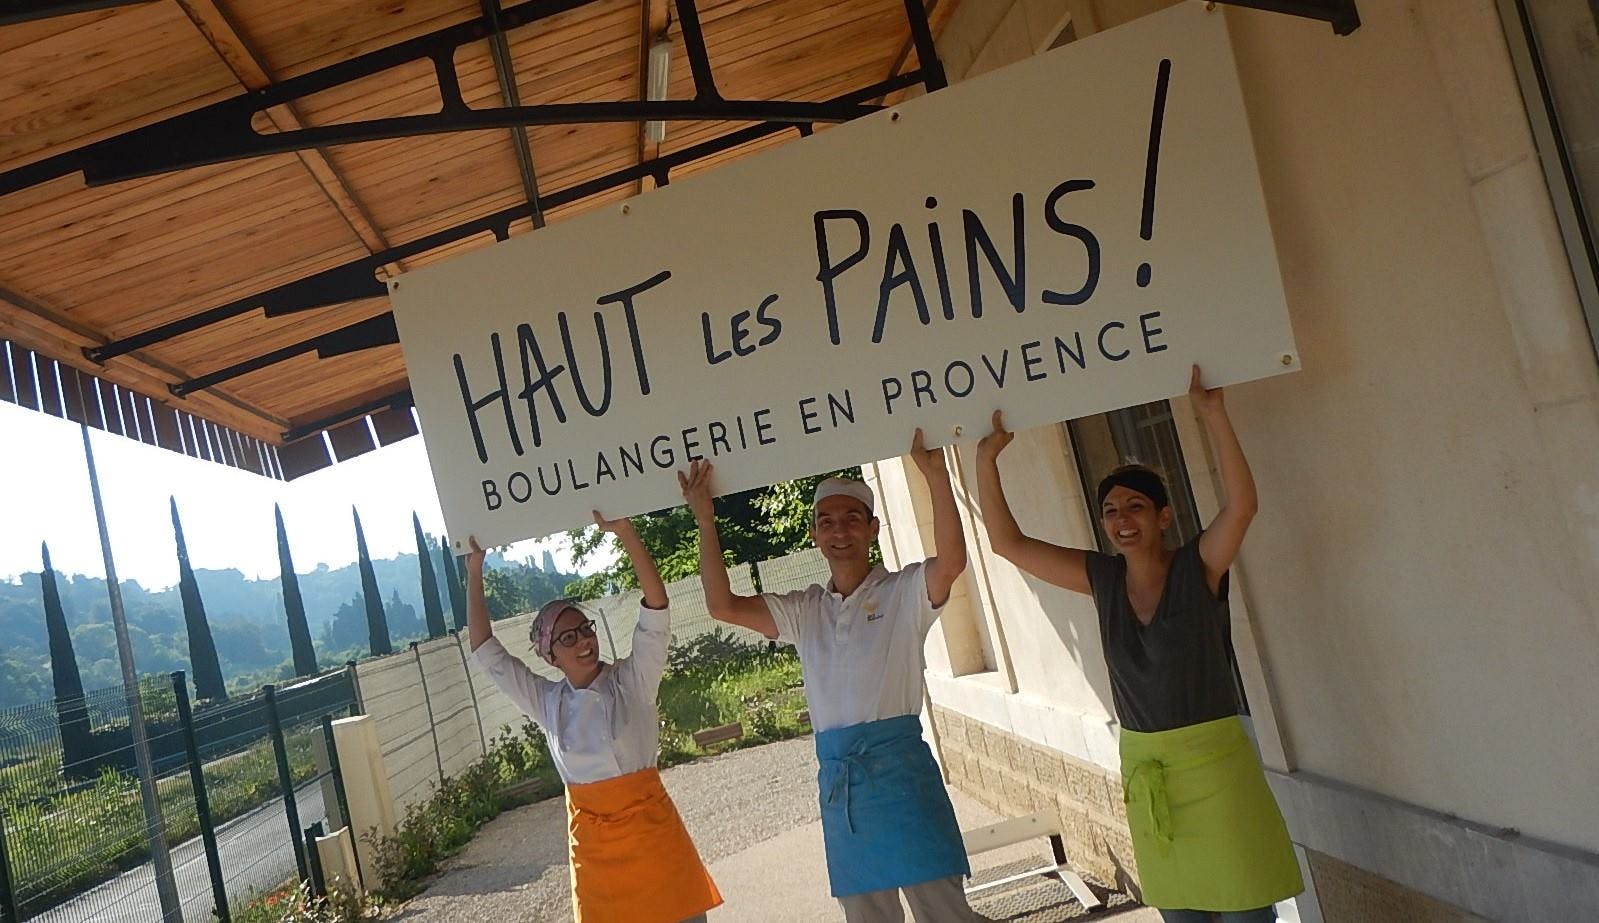 Enercoop Paca - Haut les Pains - Lauris - photo de l'équipe de la boulangerie